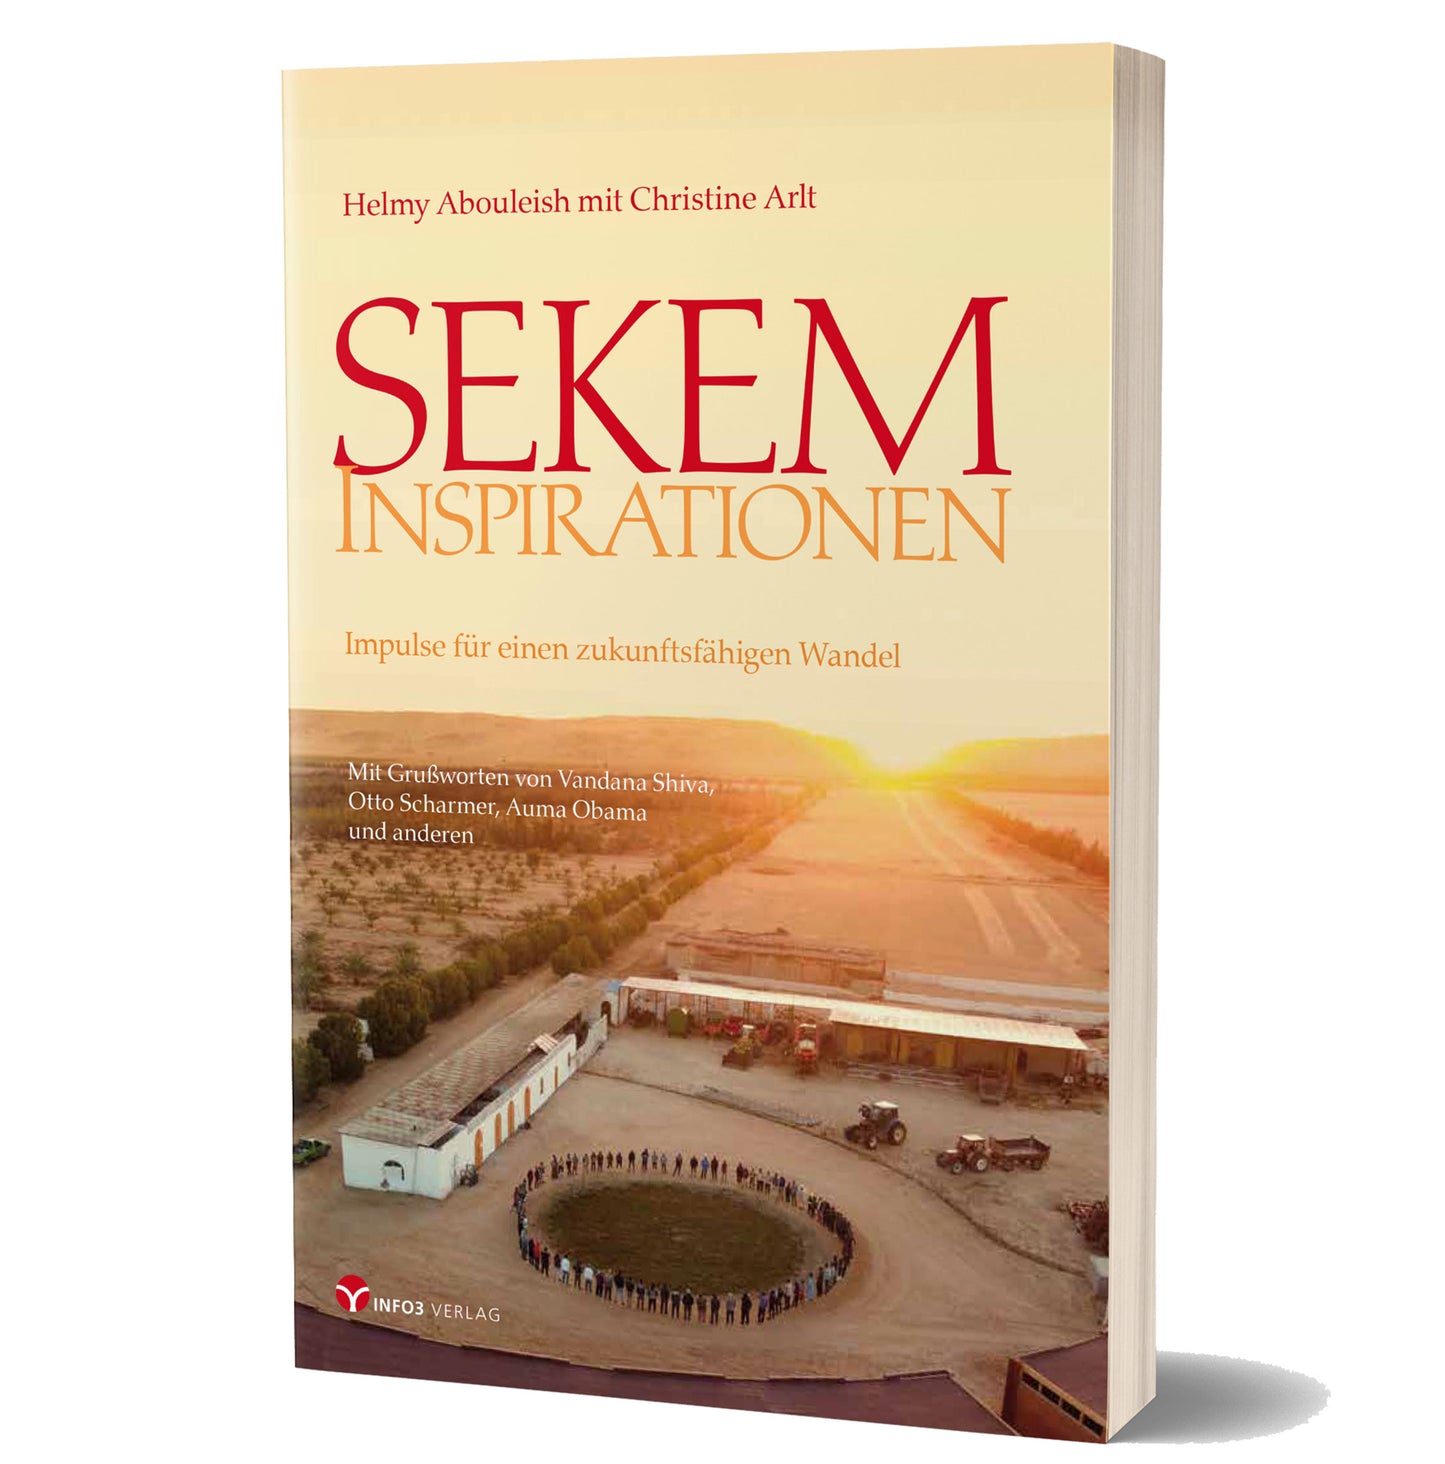 SEKEM Inspirationen - Impulse für einen zukunftsfähigen Wandel, Buch